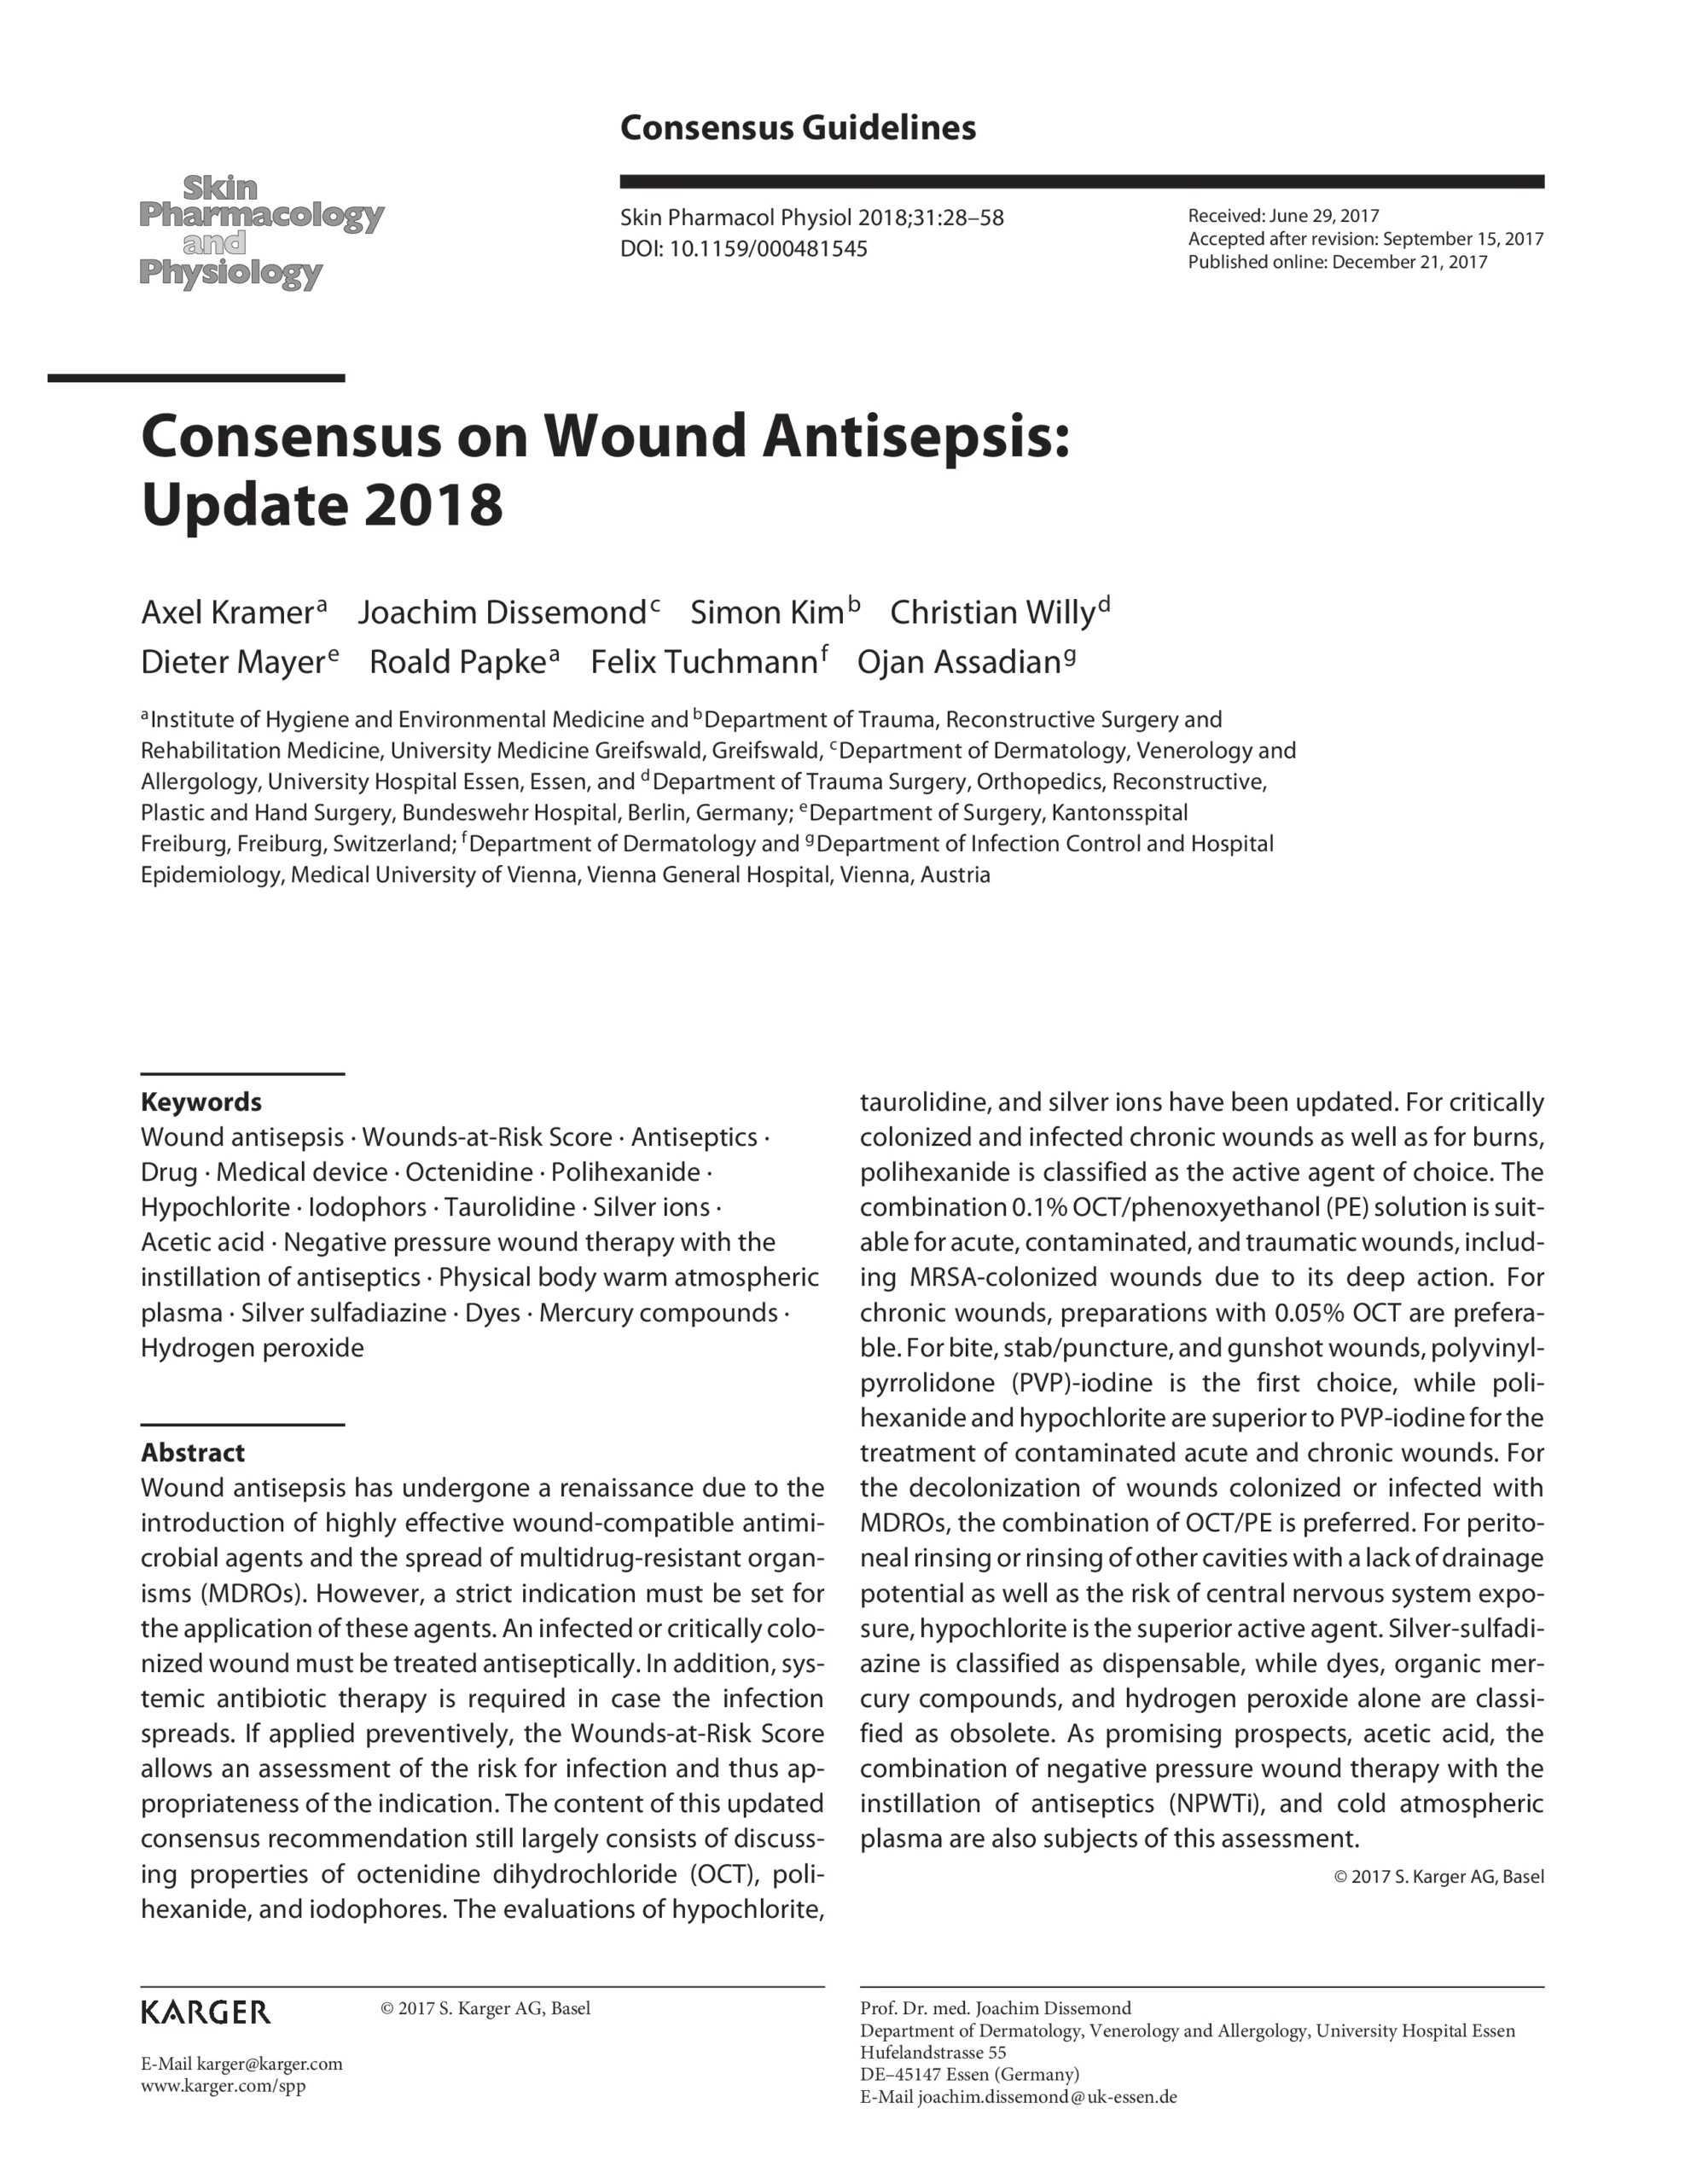 consenso sobre la antisepsia de las heridas